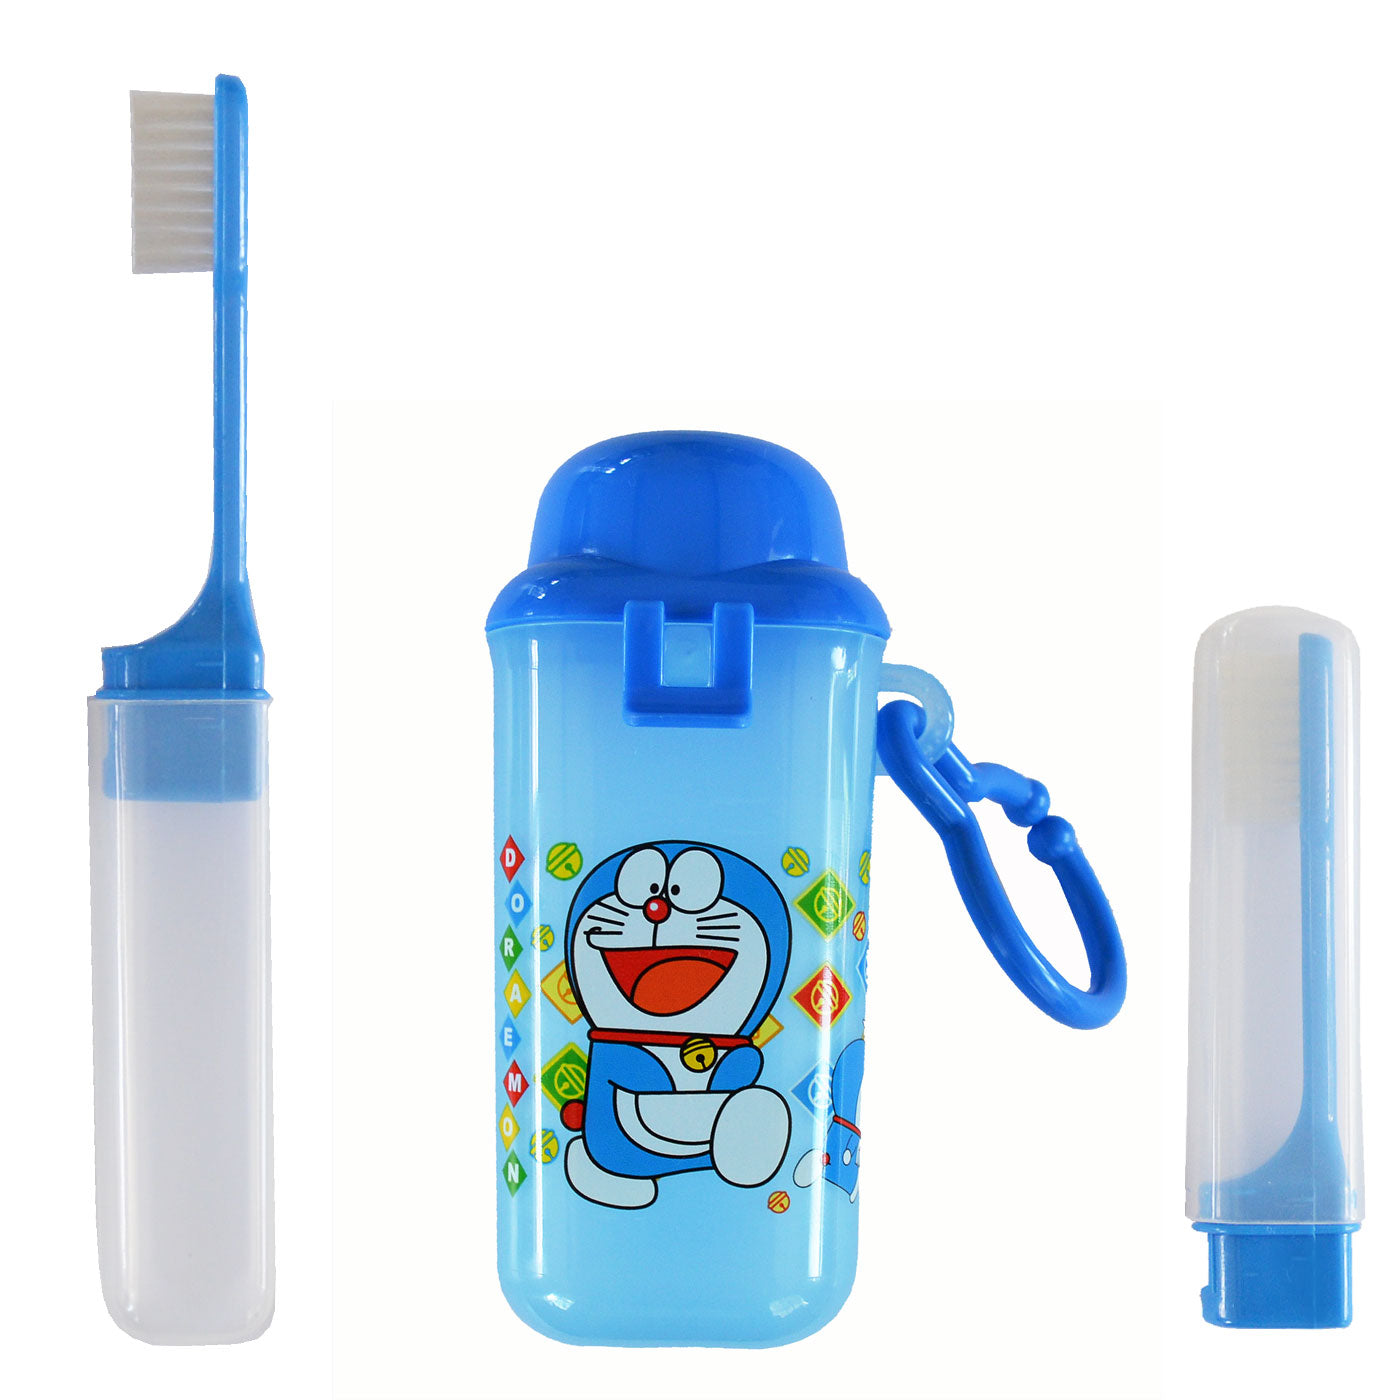 Kids Travel Tooth Brush Set